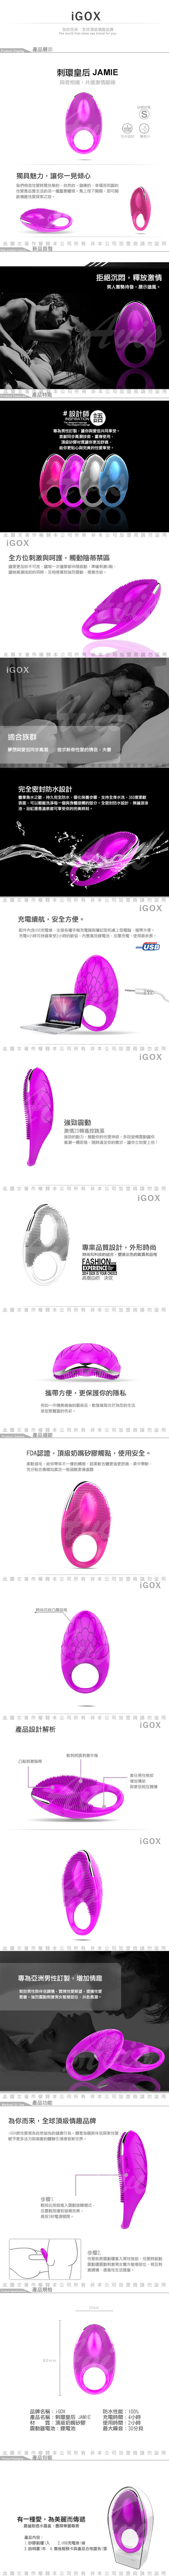 香港IGOX JAMIE 刺環皇后 JAMIE 20頻 男用震動環 USB充電  魅紫